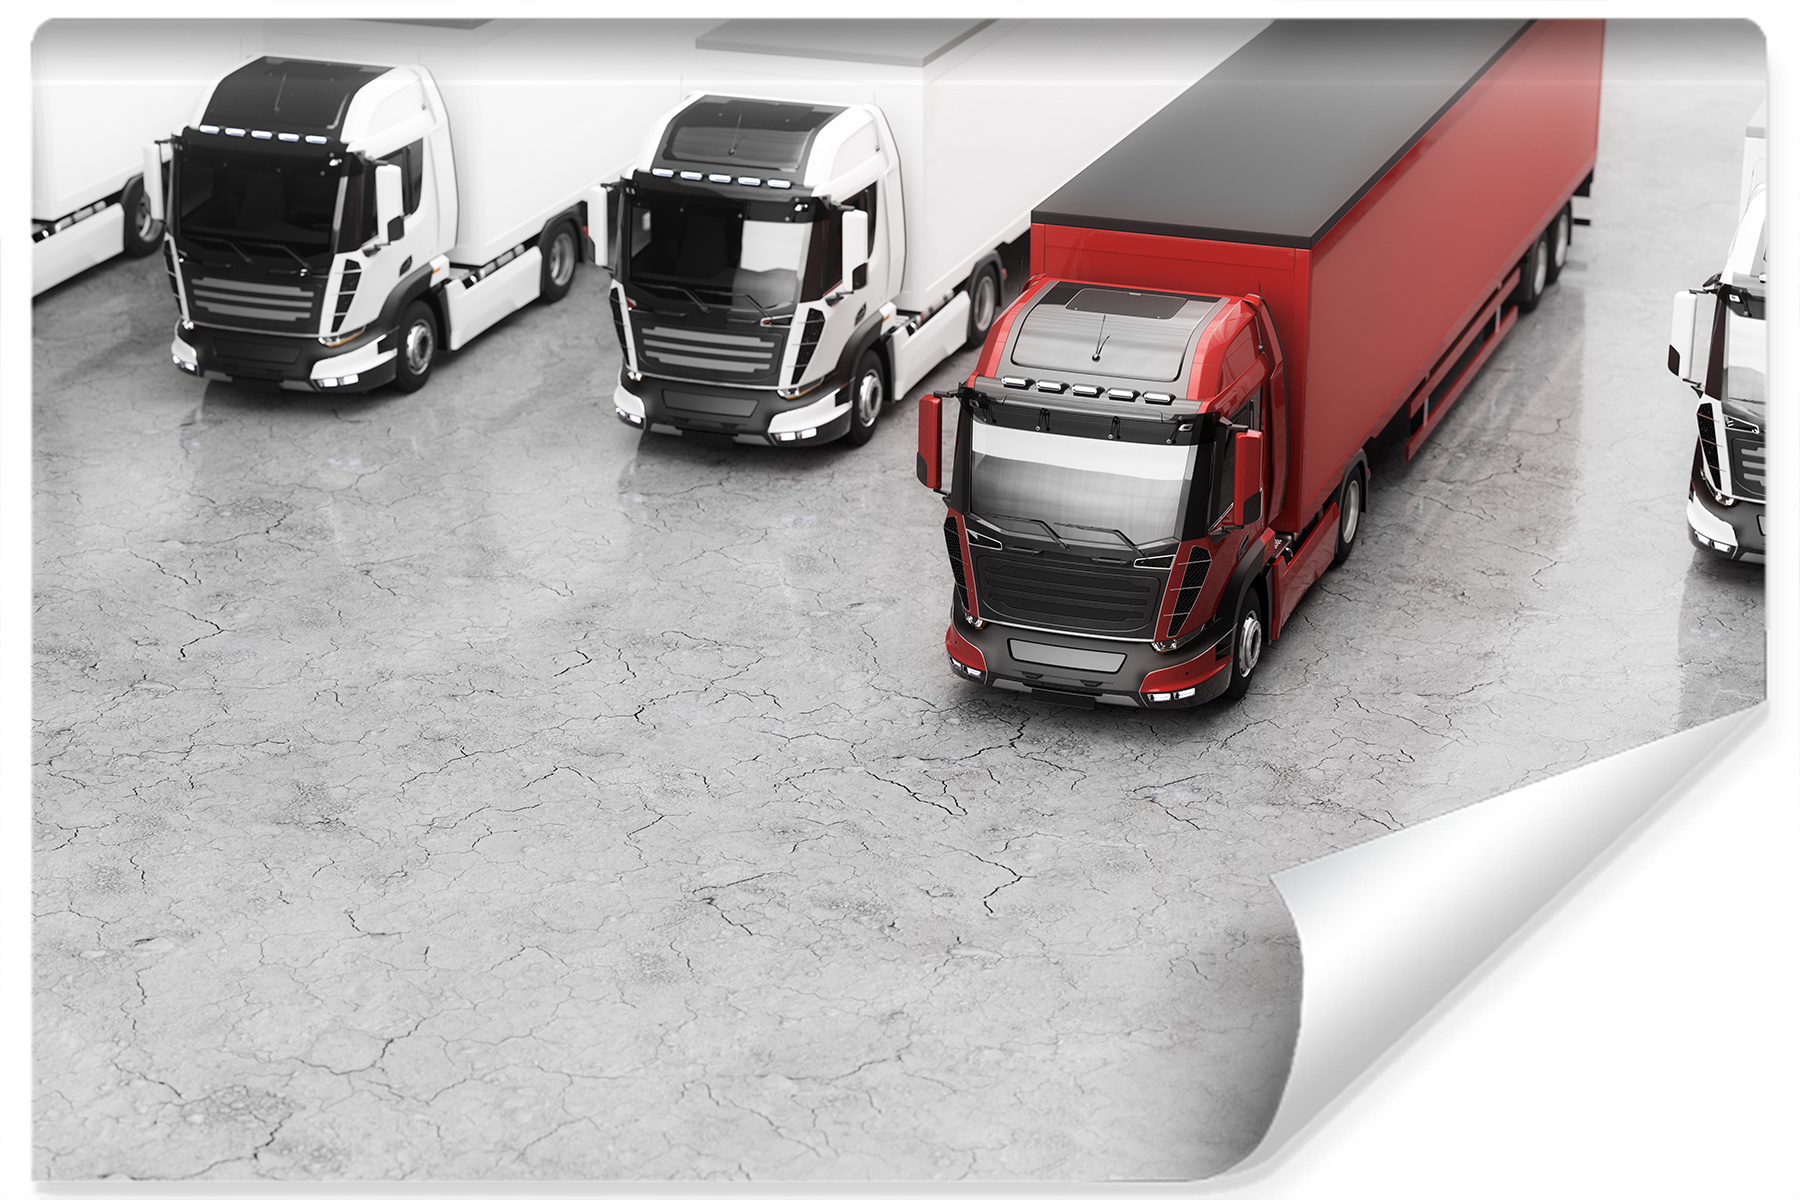 Photo wallpaper Fleet of Trucks Non-woven 104 x 70.5 cm FT-2896-VEM